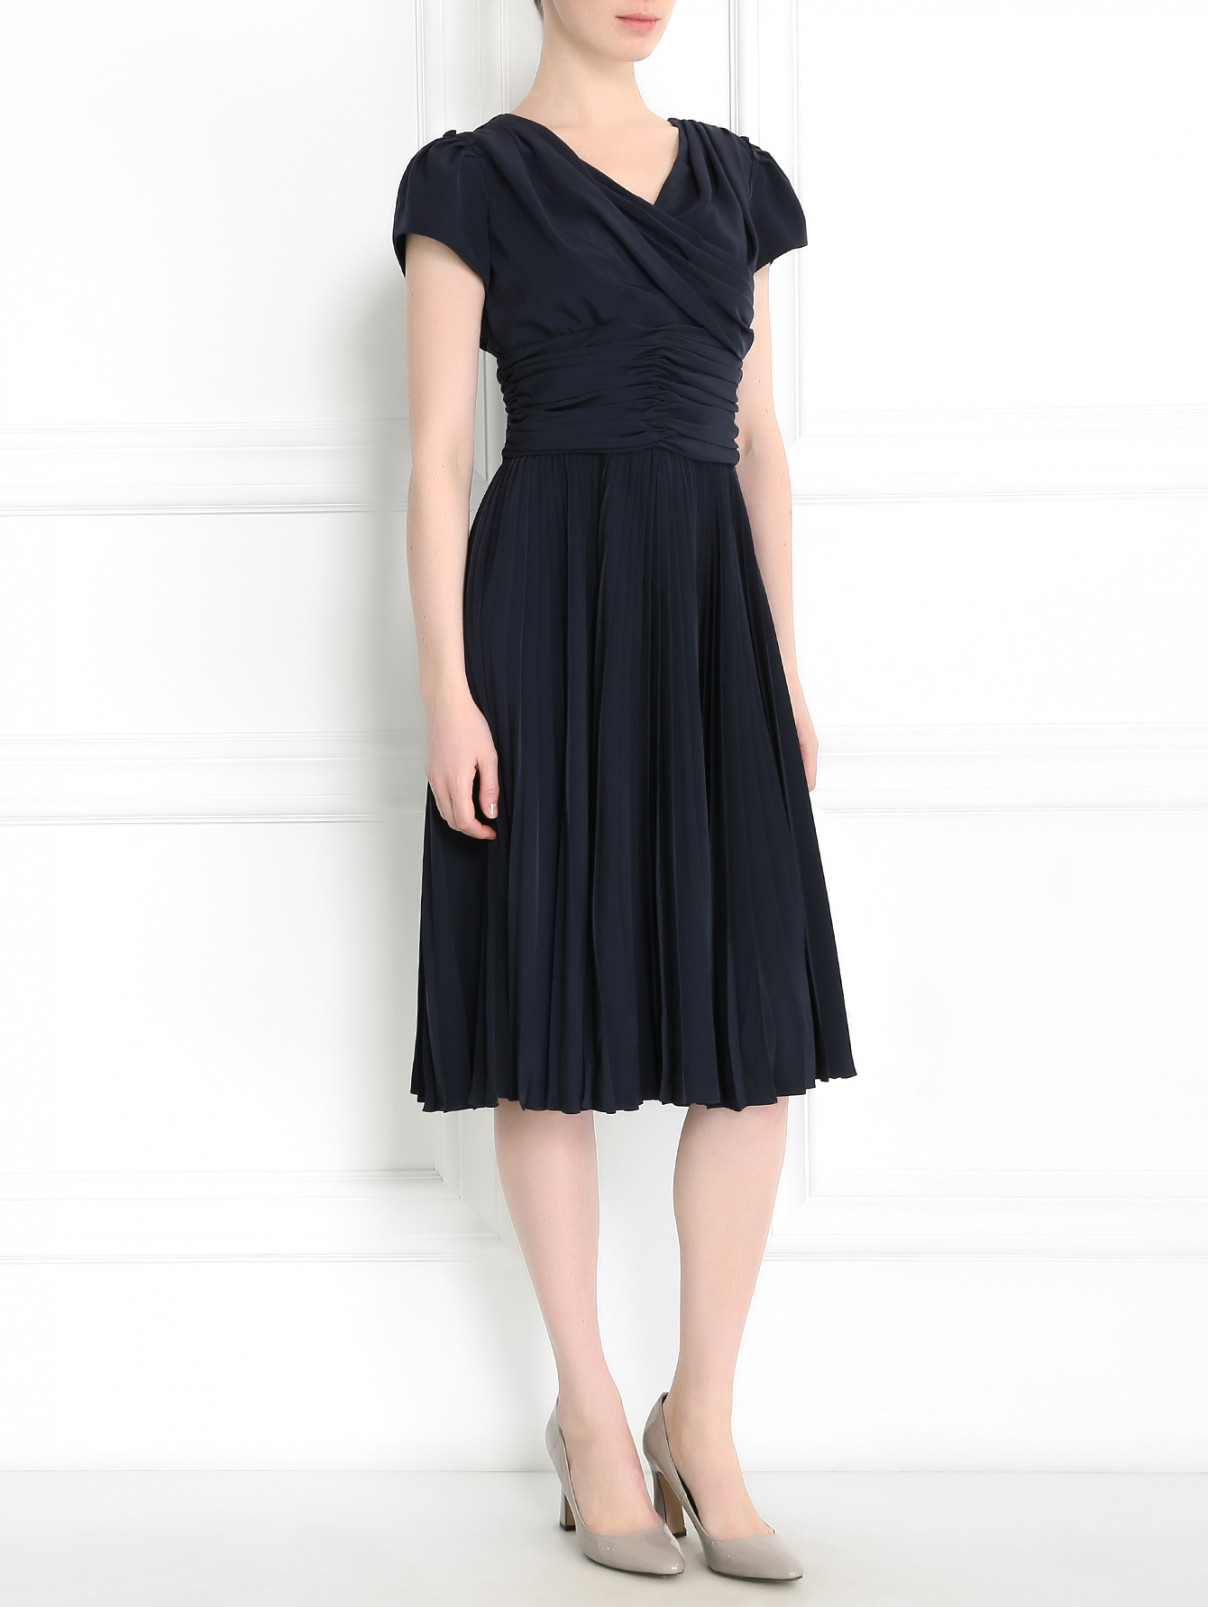 Платье с драпировкой Antonio Marras  –  Модель Общий вид  – Цвет:  Синий